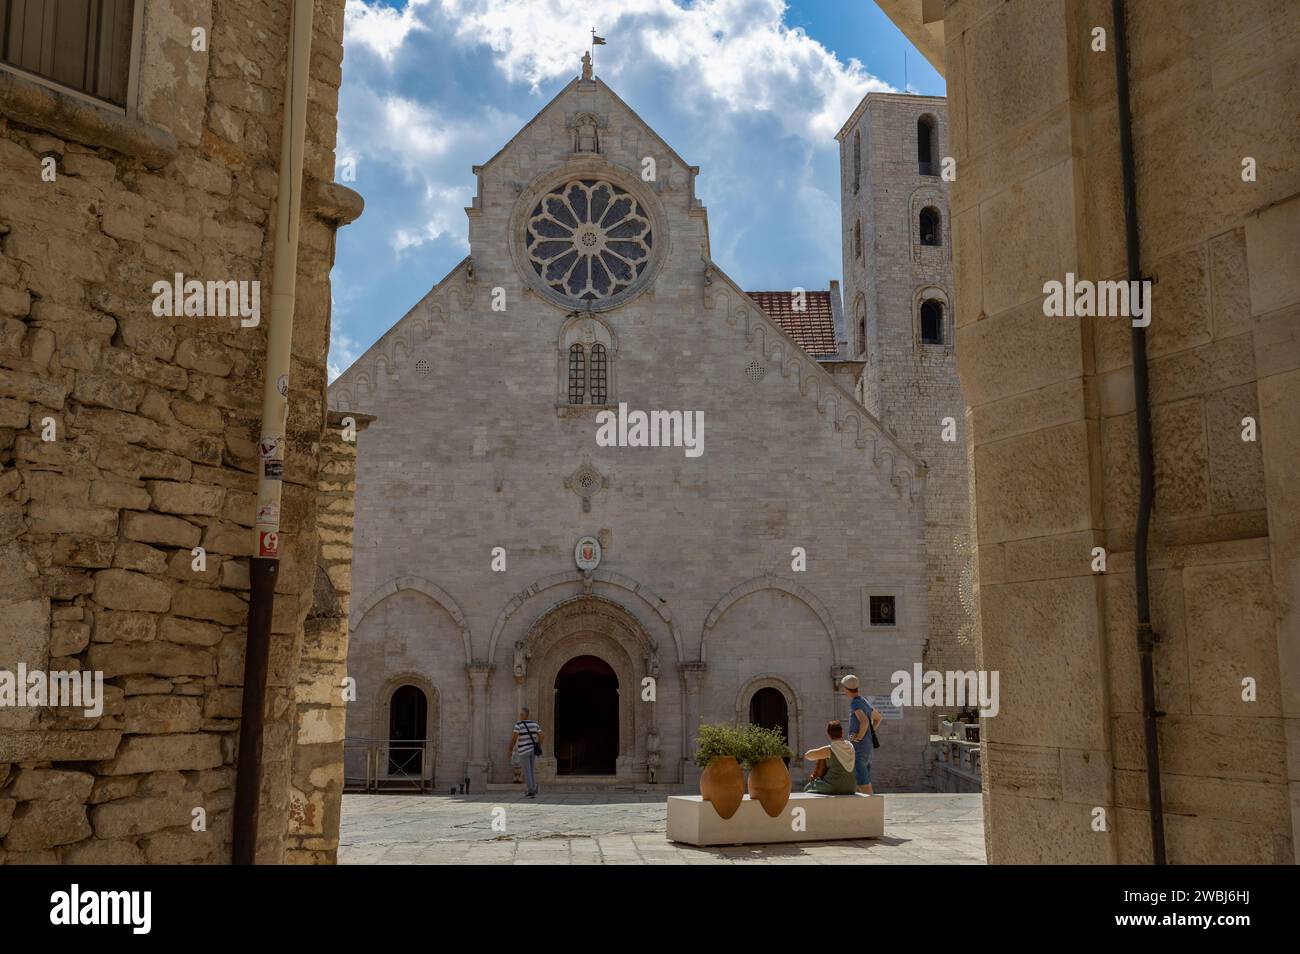 RUVO DI PUGLIA, JULY 10, 2022 - The co-cathedral of Ruvo di Puglia, dedicated to Santa Maria Assunta, in Ruvo di Puglia, Puglia, Italy Stock Photo